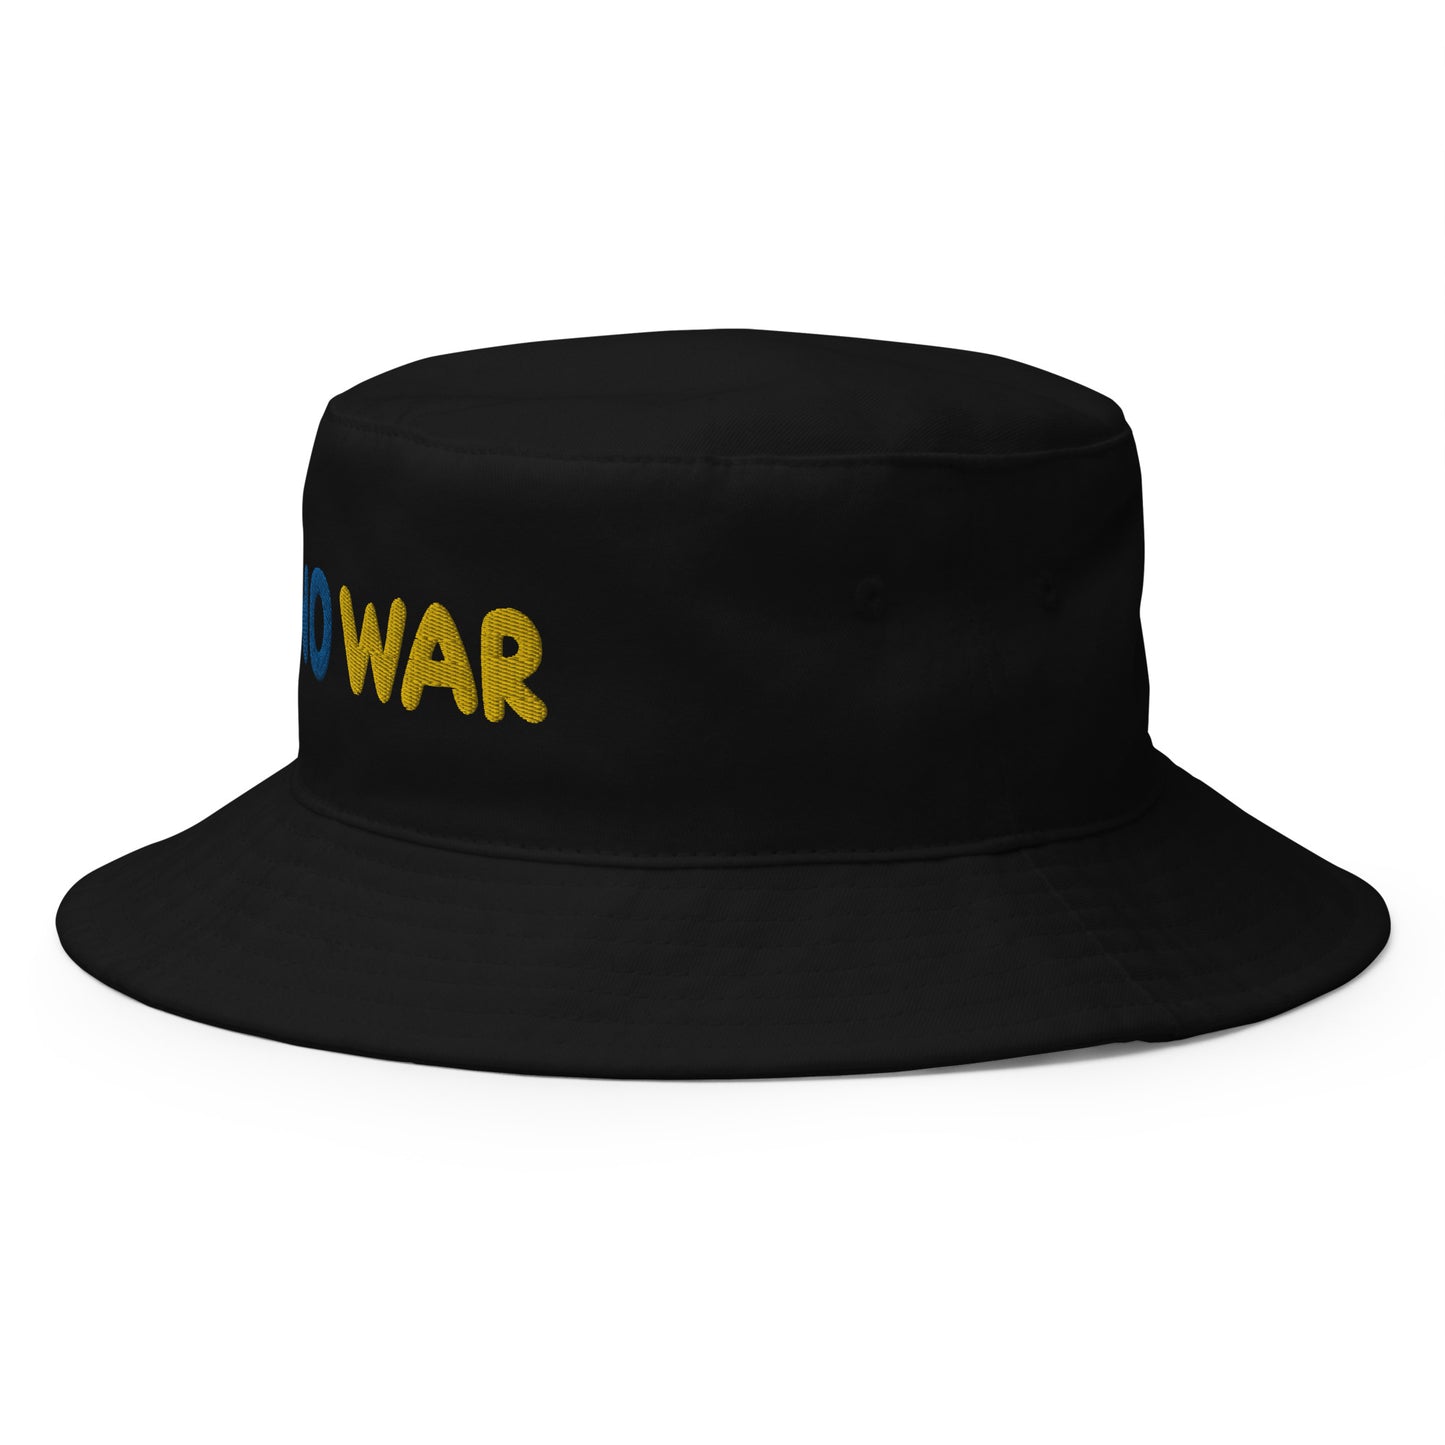 No War UKR Bucket Hat